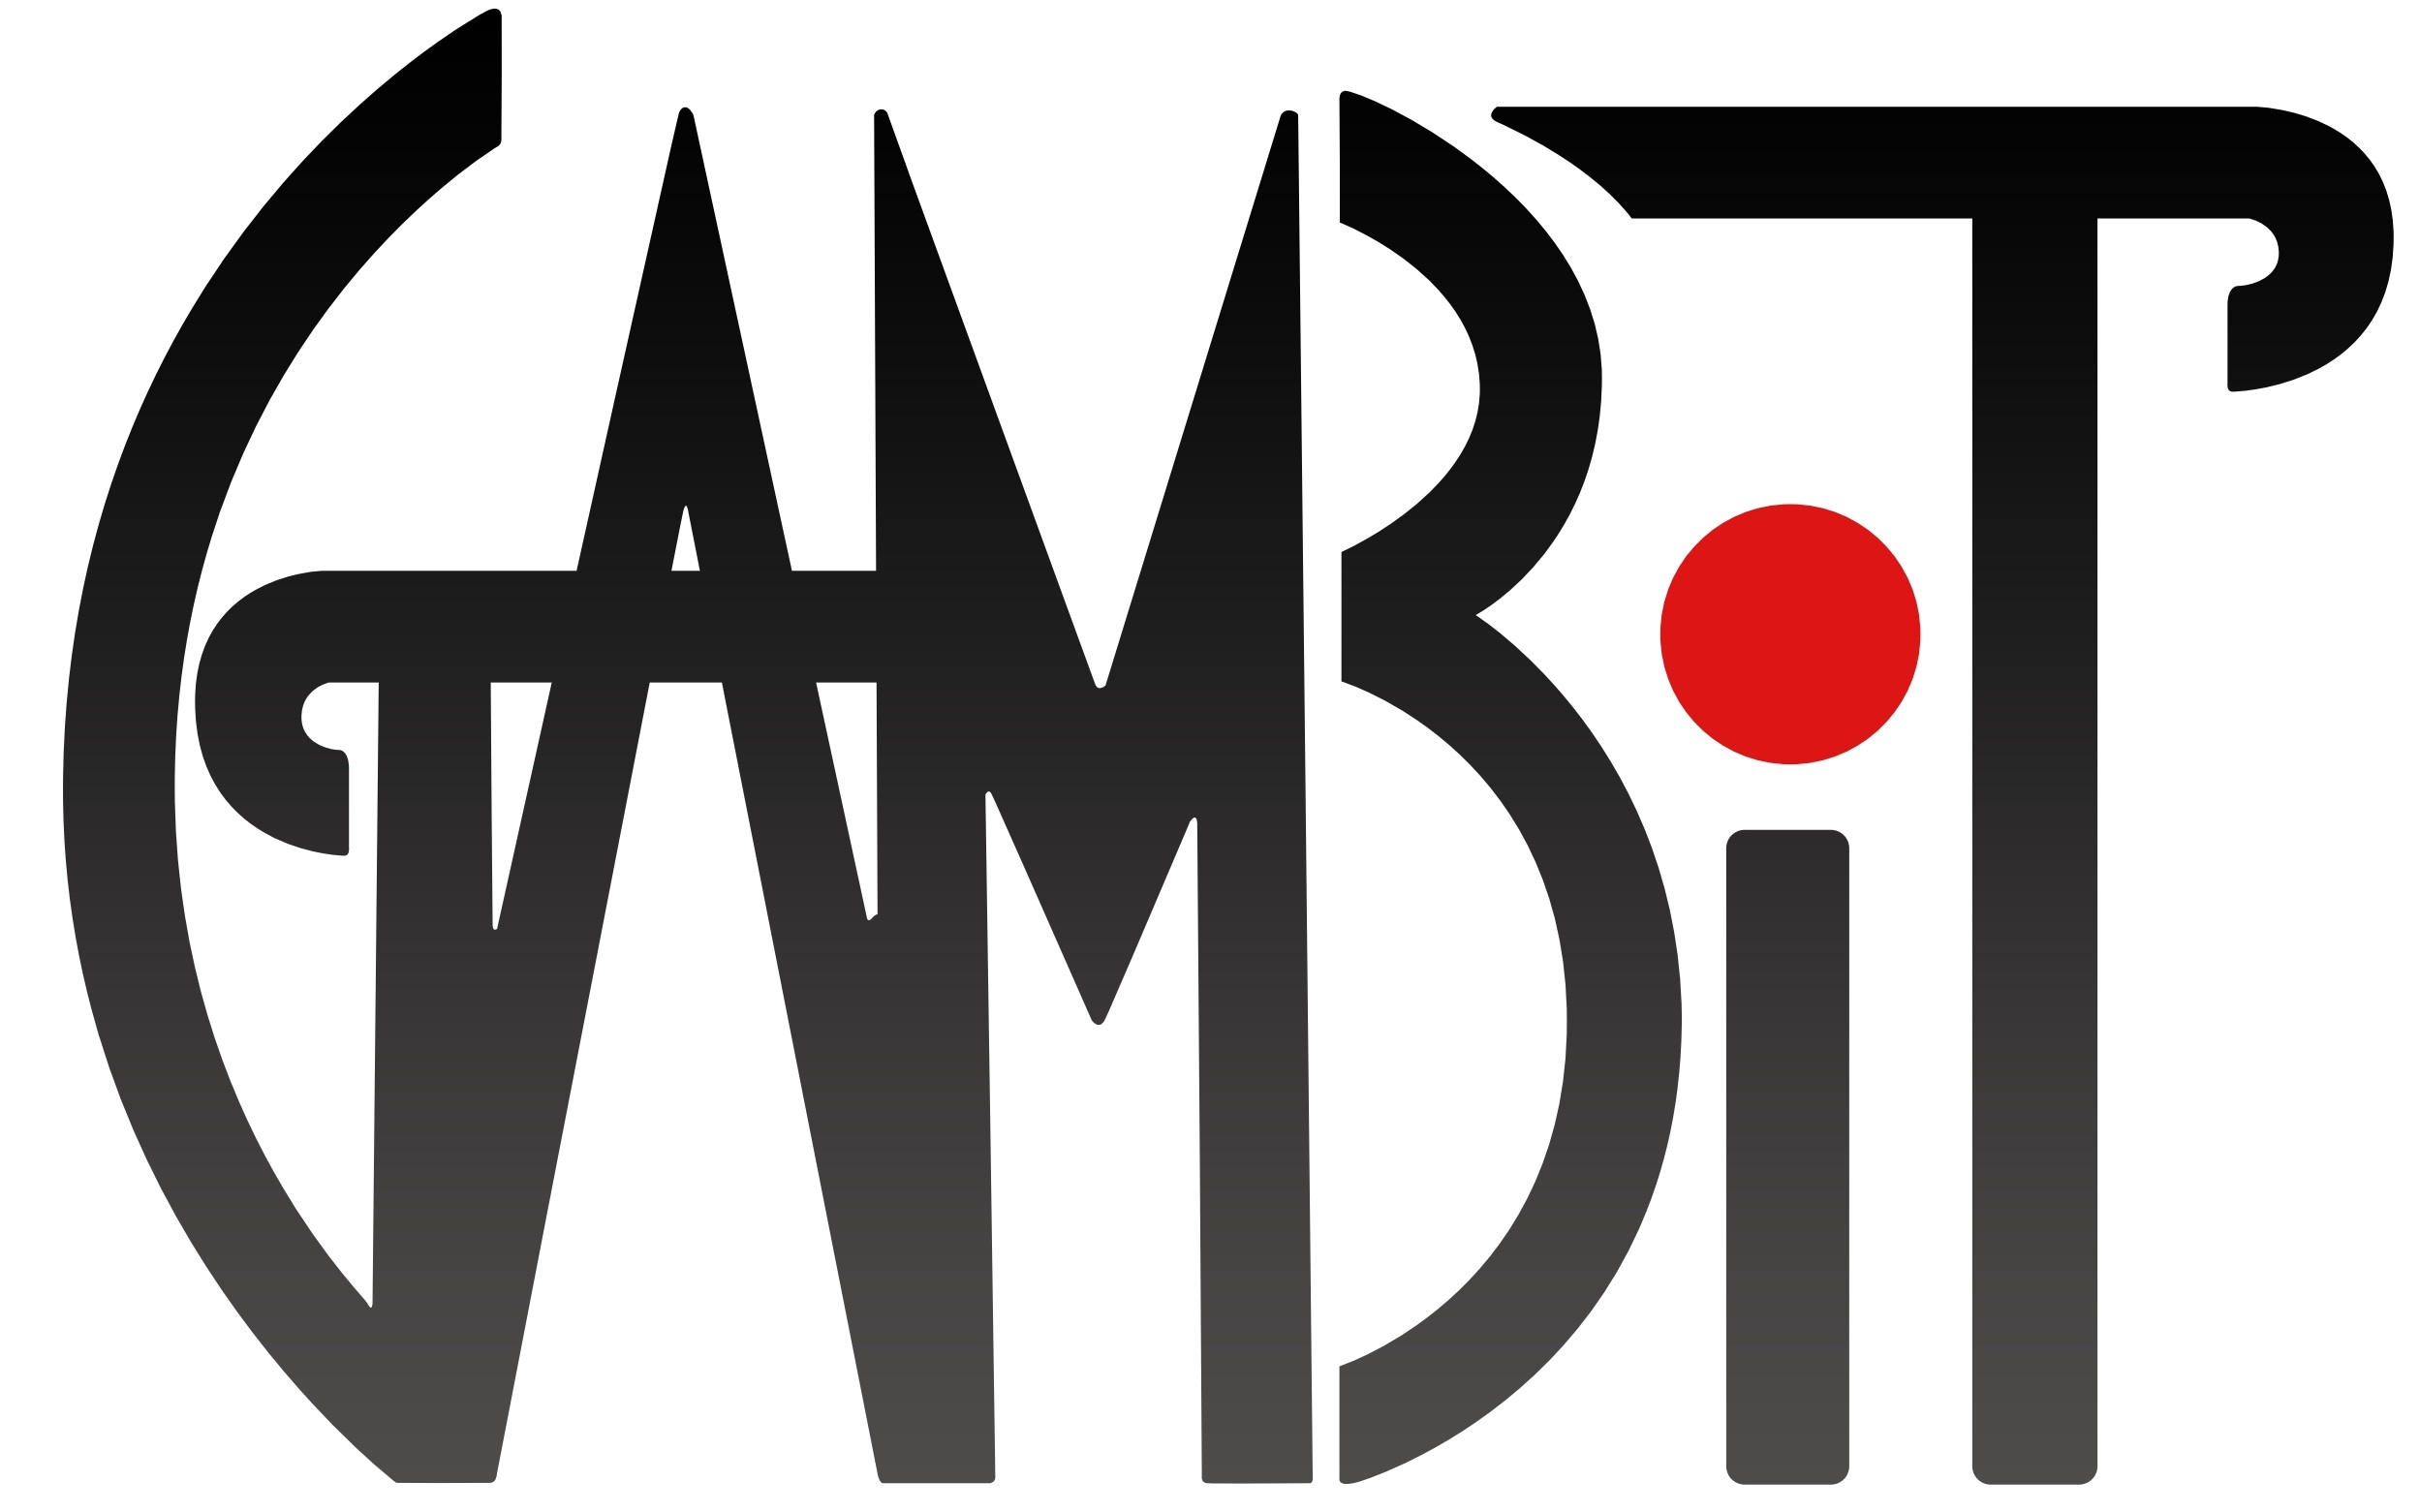 GAMBIT Logo.jpg 880e2616a3170dbedab40081470a058f